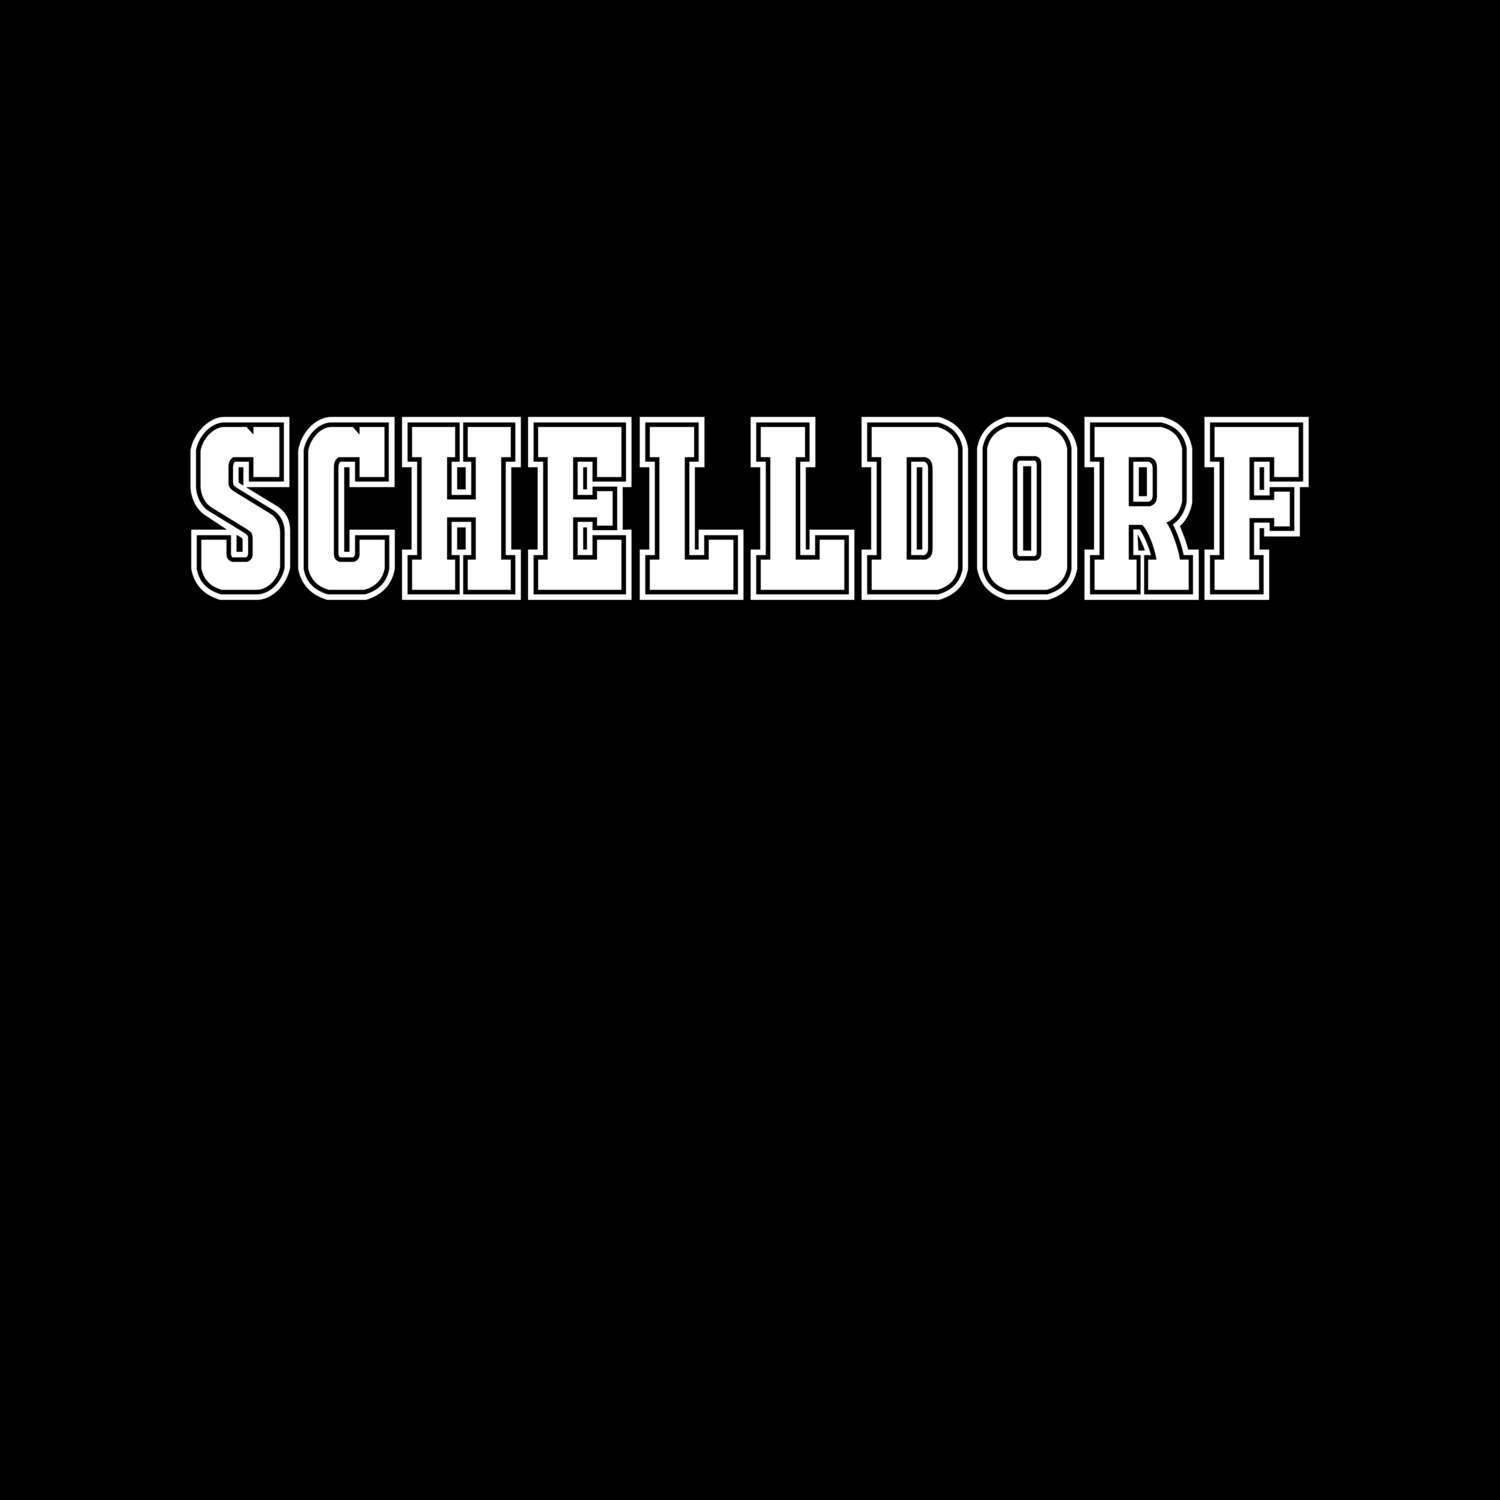 Schelldorf T-Shirt »Classic«